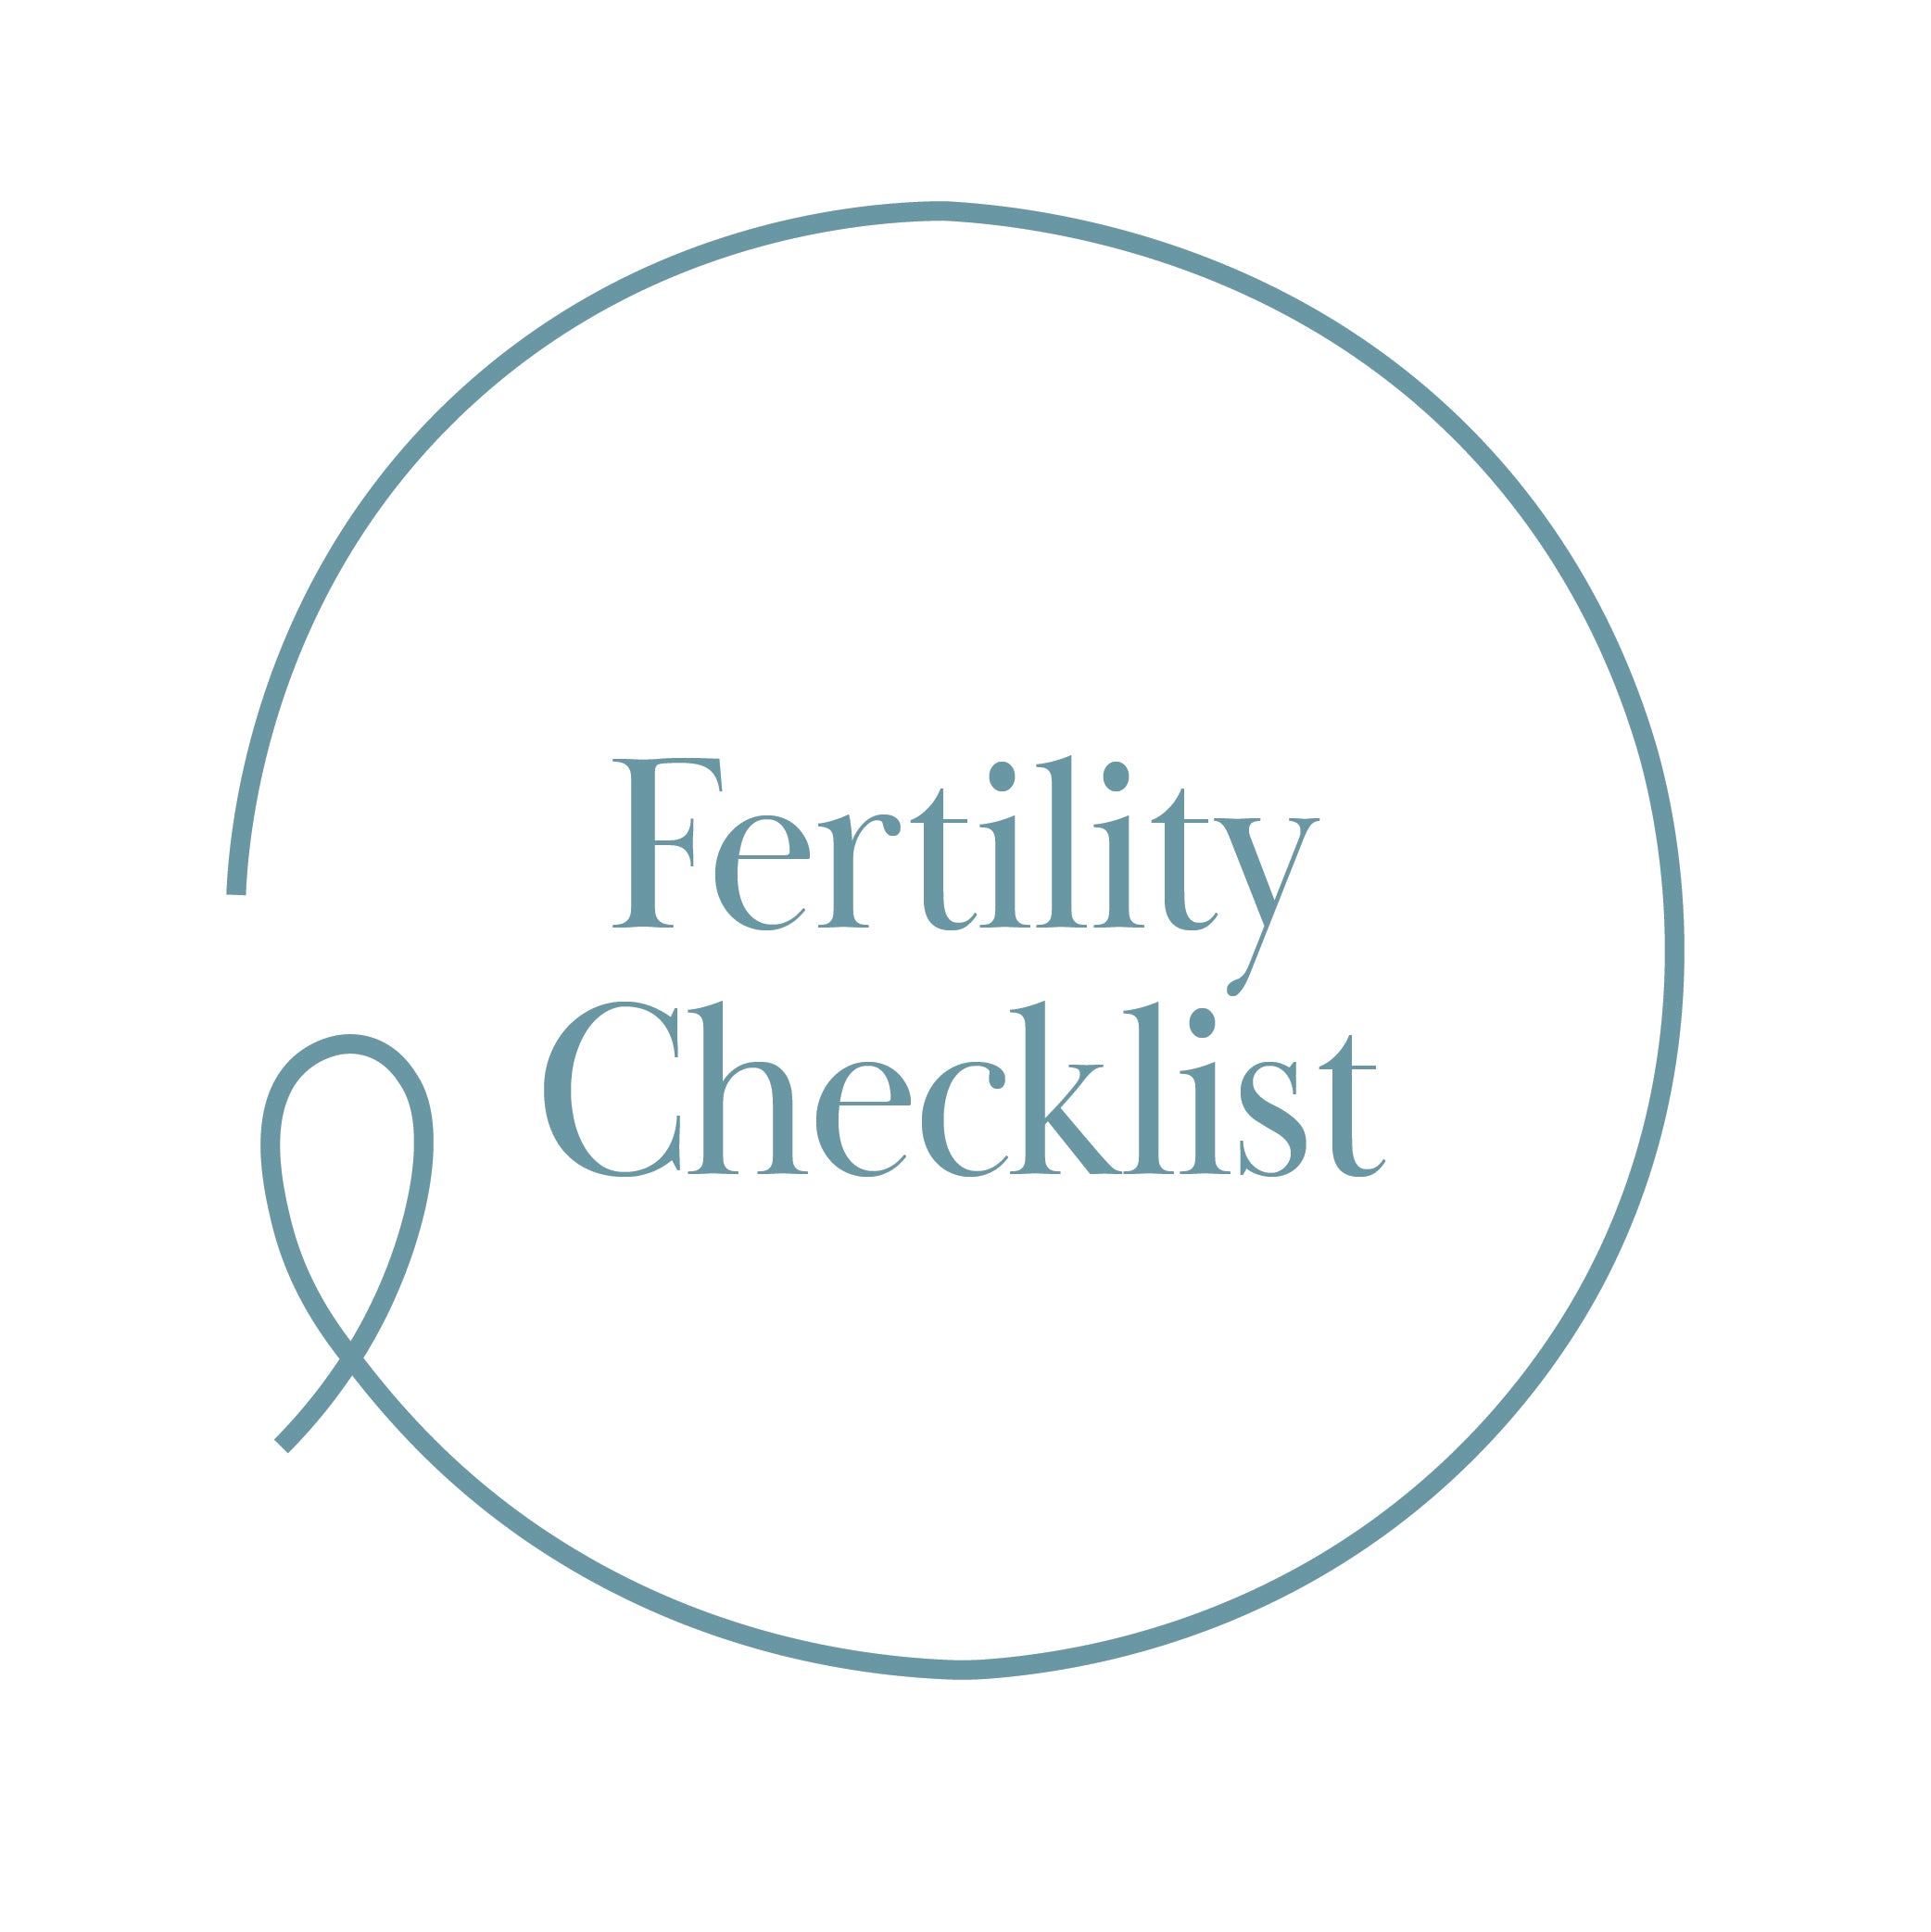 Fertility Checklist